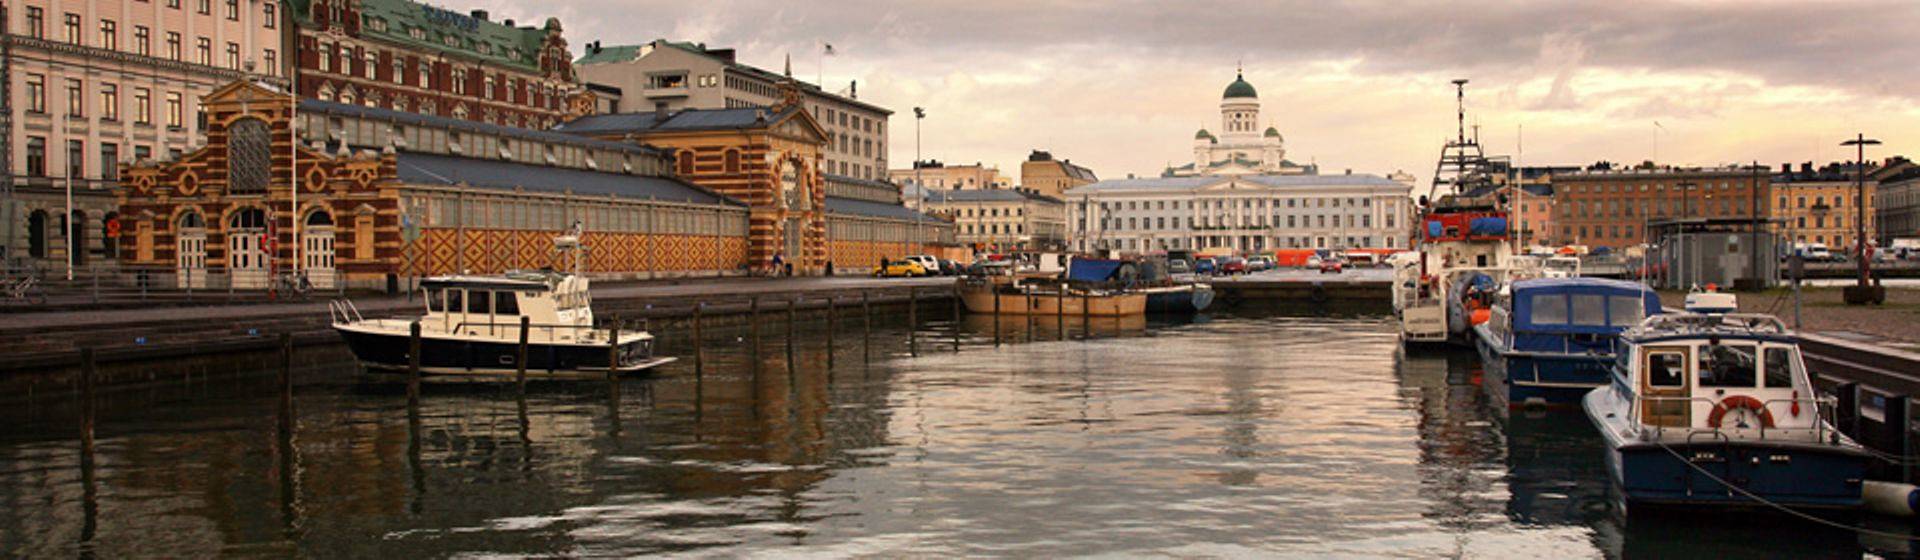 Holidays to Helsinki Image